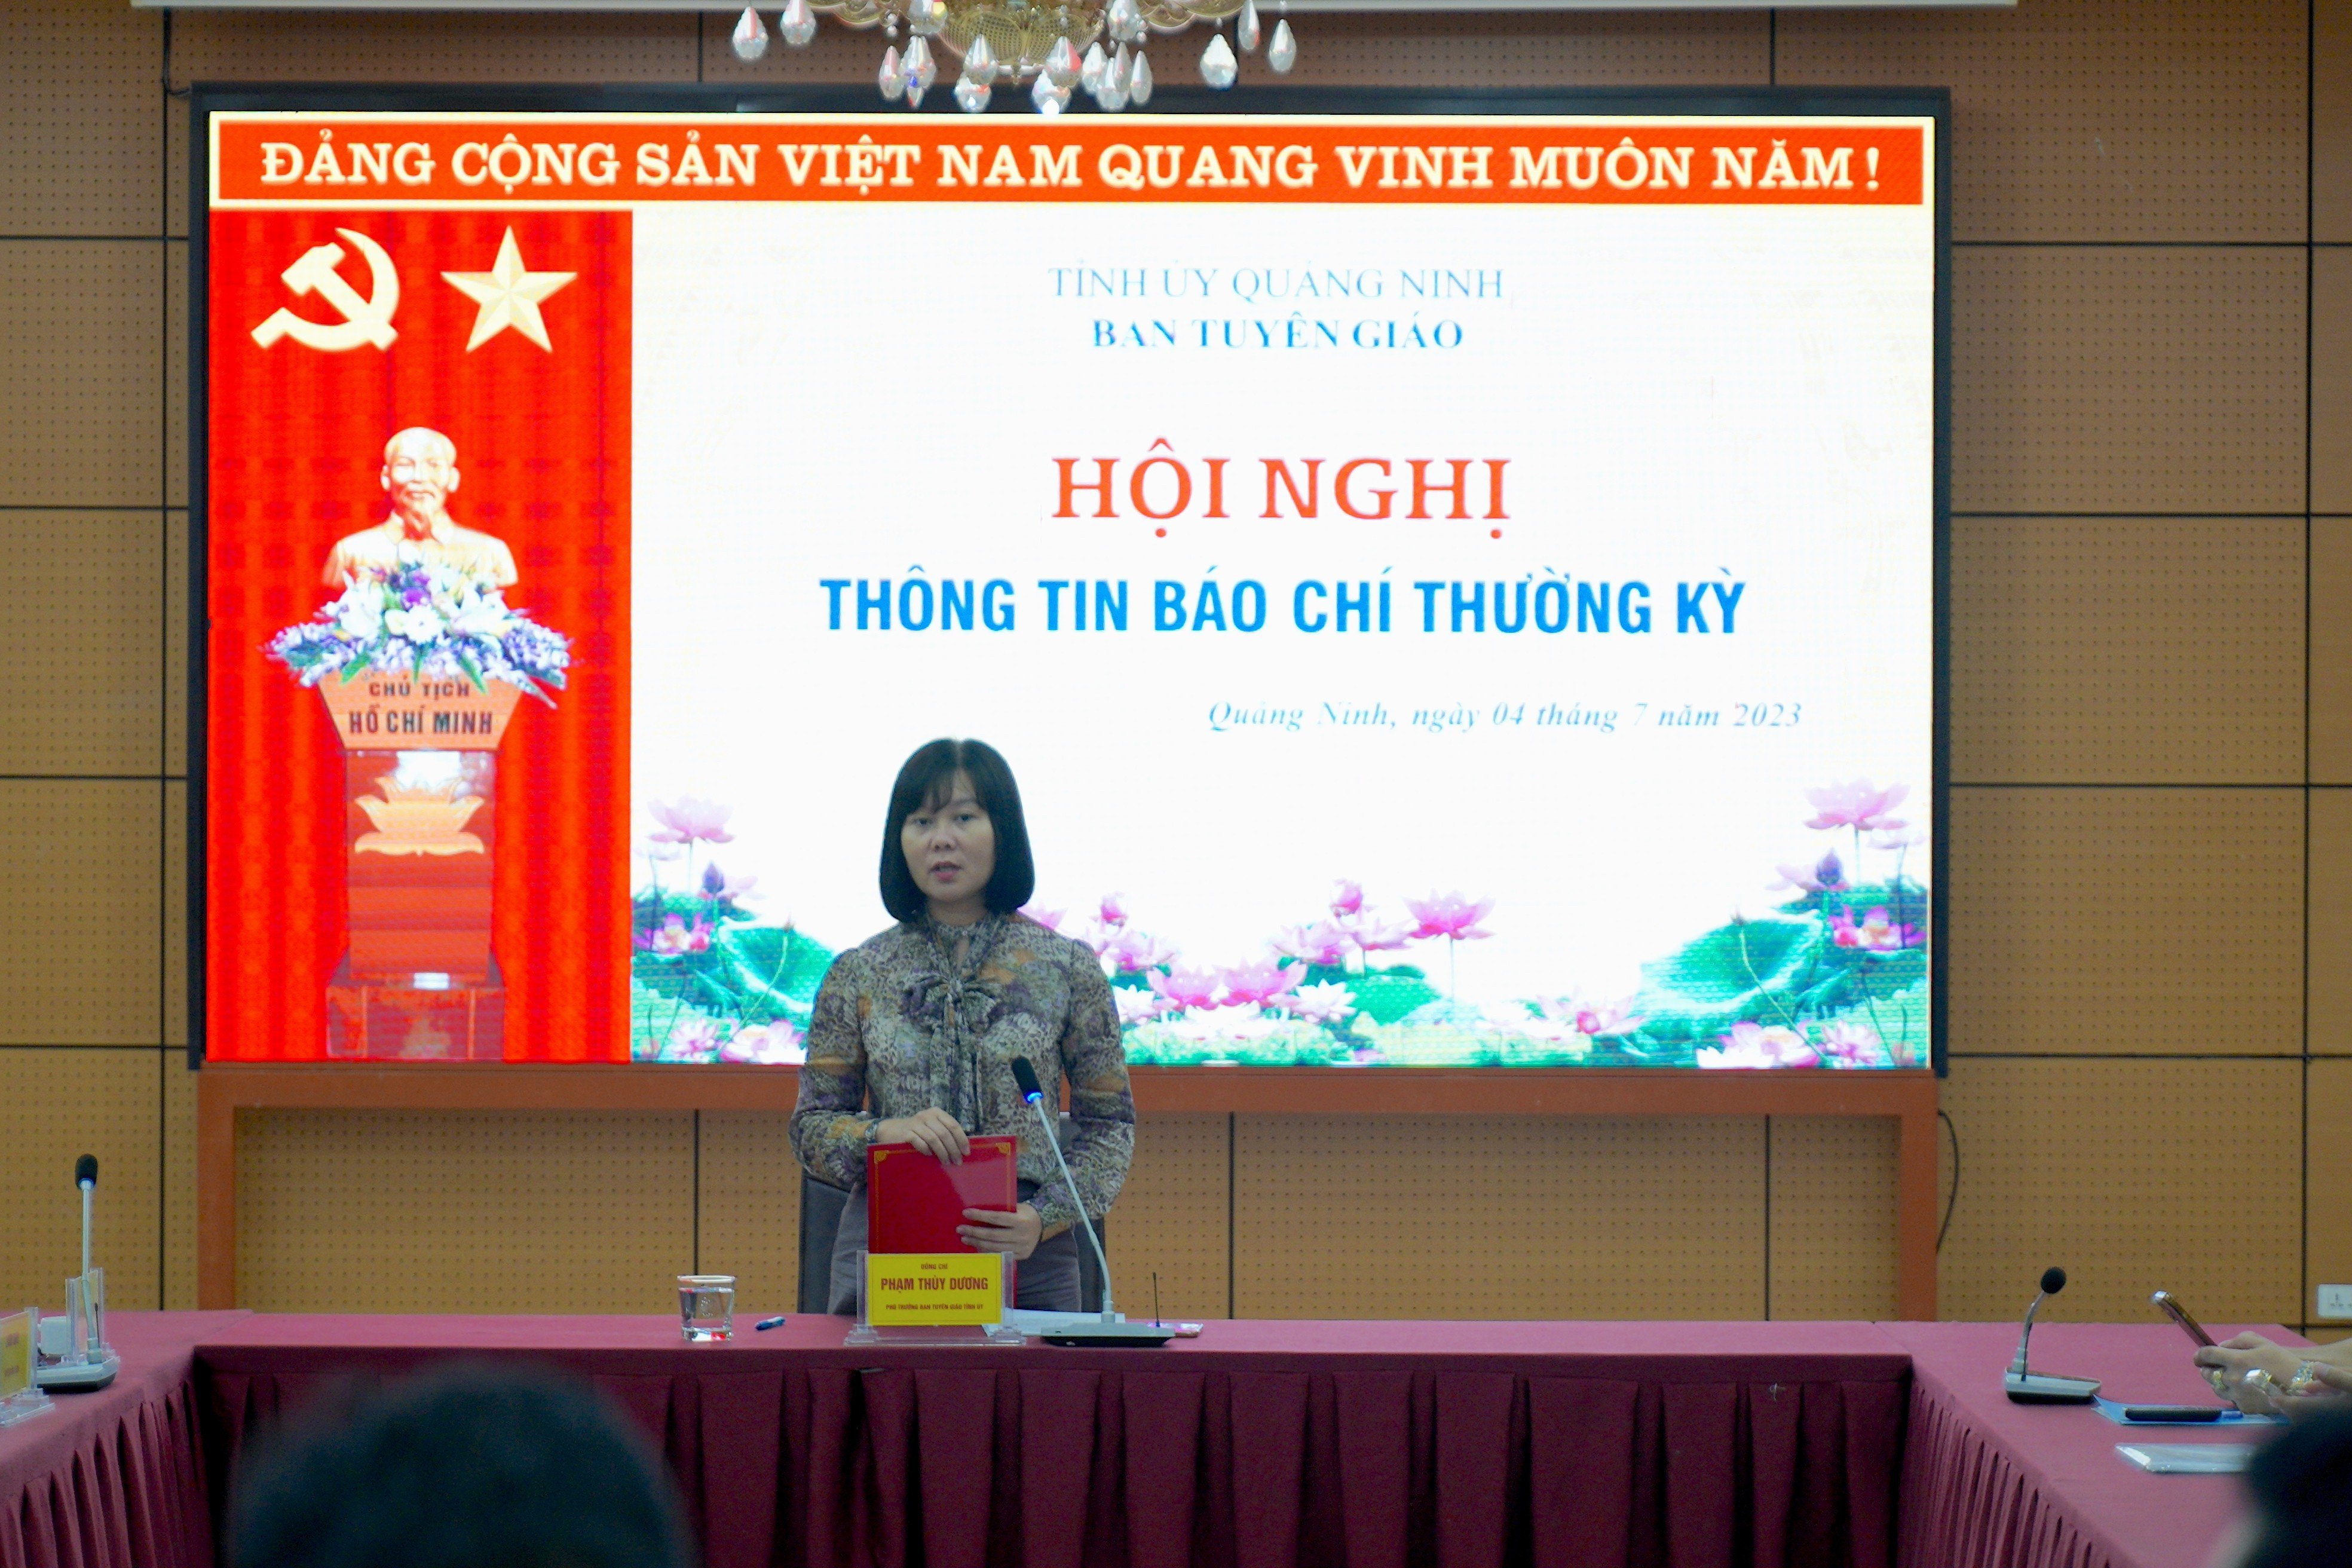 Quảng Ninh thông báo về kỳ họp HĐND khóa XIV và kết quả huyện Vân Đồn đạt chuẩn nông thôn mới